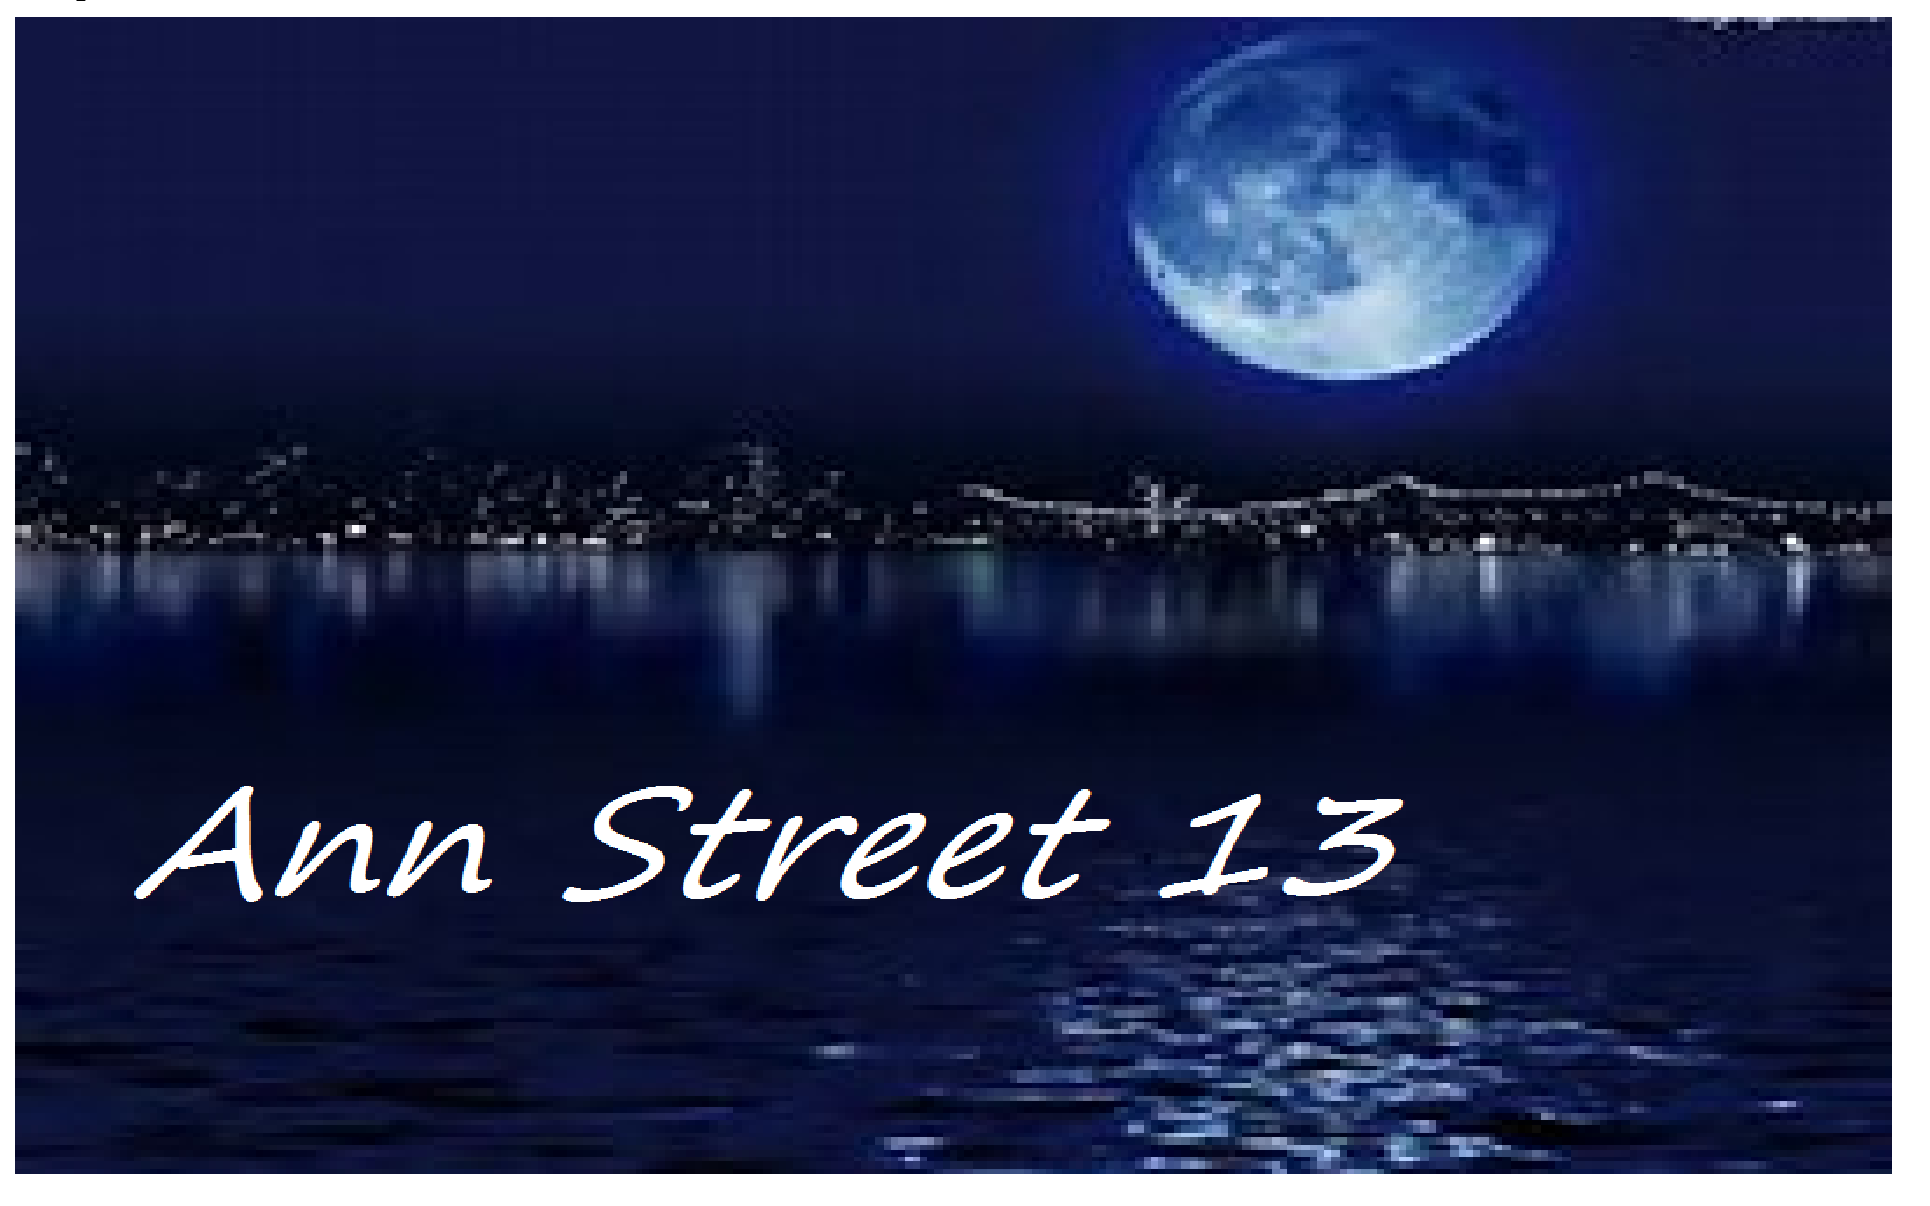 Ann Street 13 #2